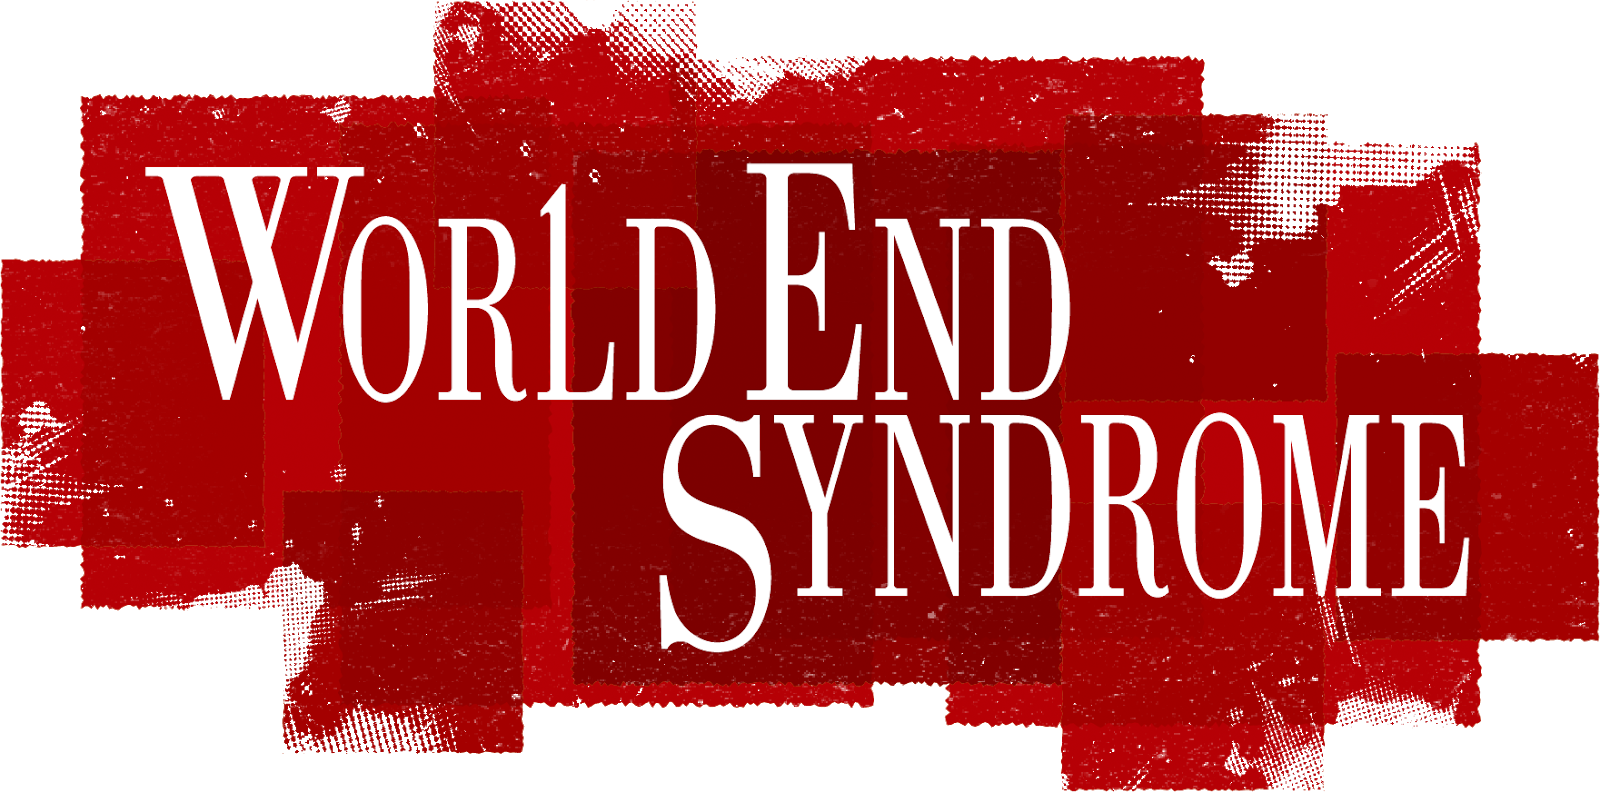 World End Syndrome, Visual Novel